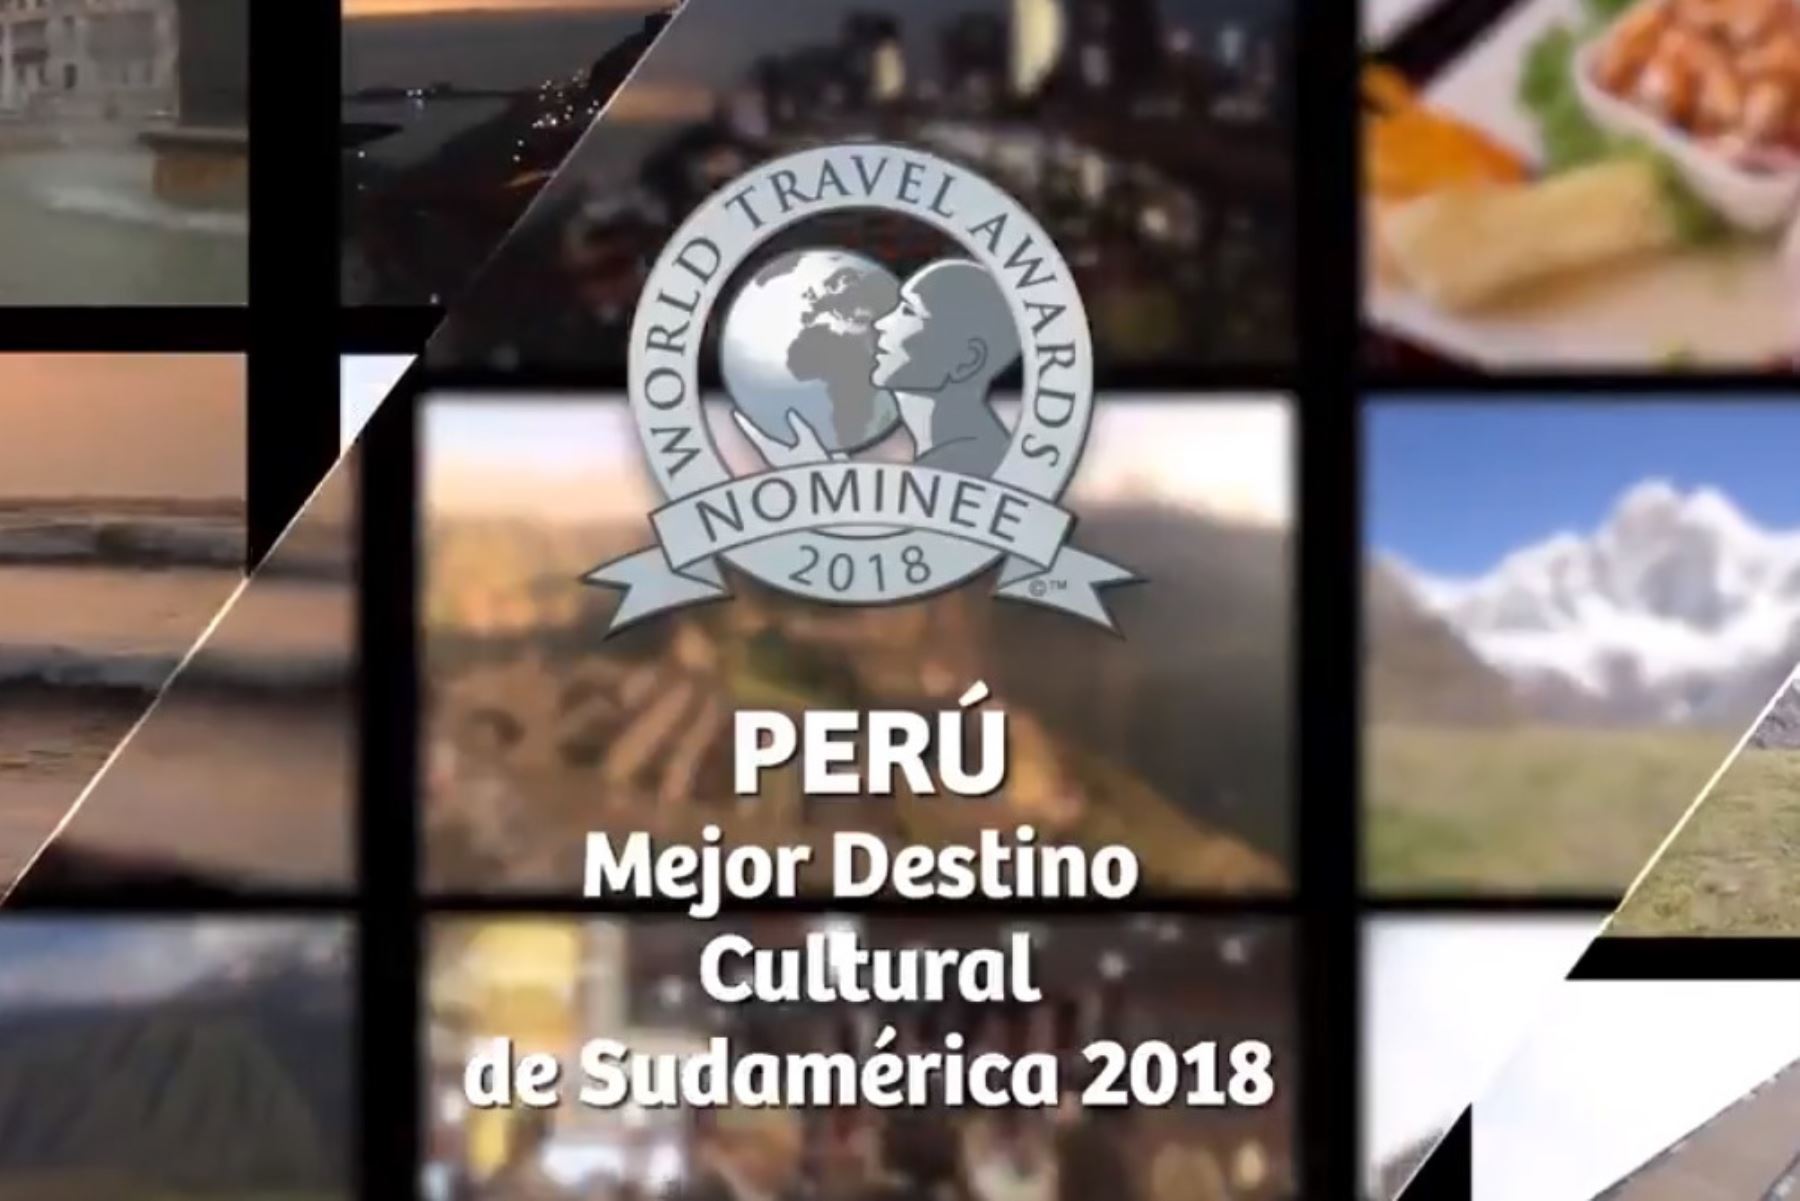 Perú busca un nuevo galardón internacional en el ámbito turístico y esta vez compite como Mejor Destino de Sudamérica en los World Travel Awards 2018, que reconocen, recompensan y celebran la excelencia en todos los sectores de la industria global de viajes y turismo.